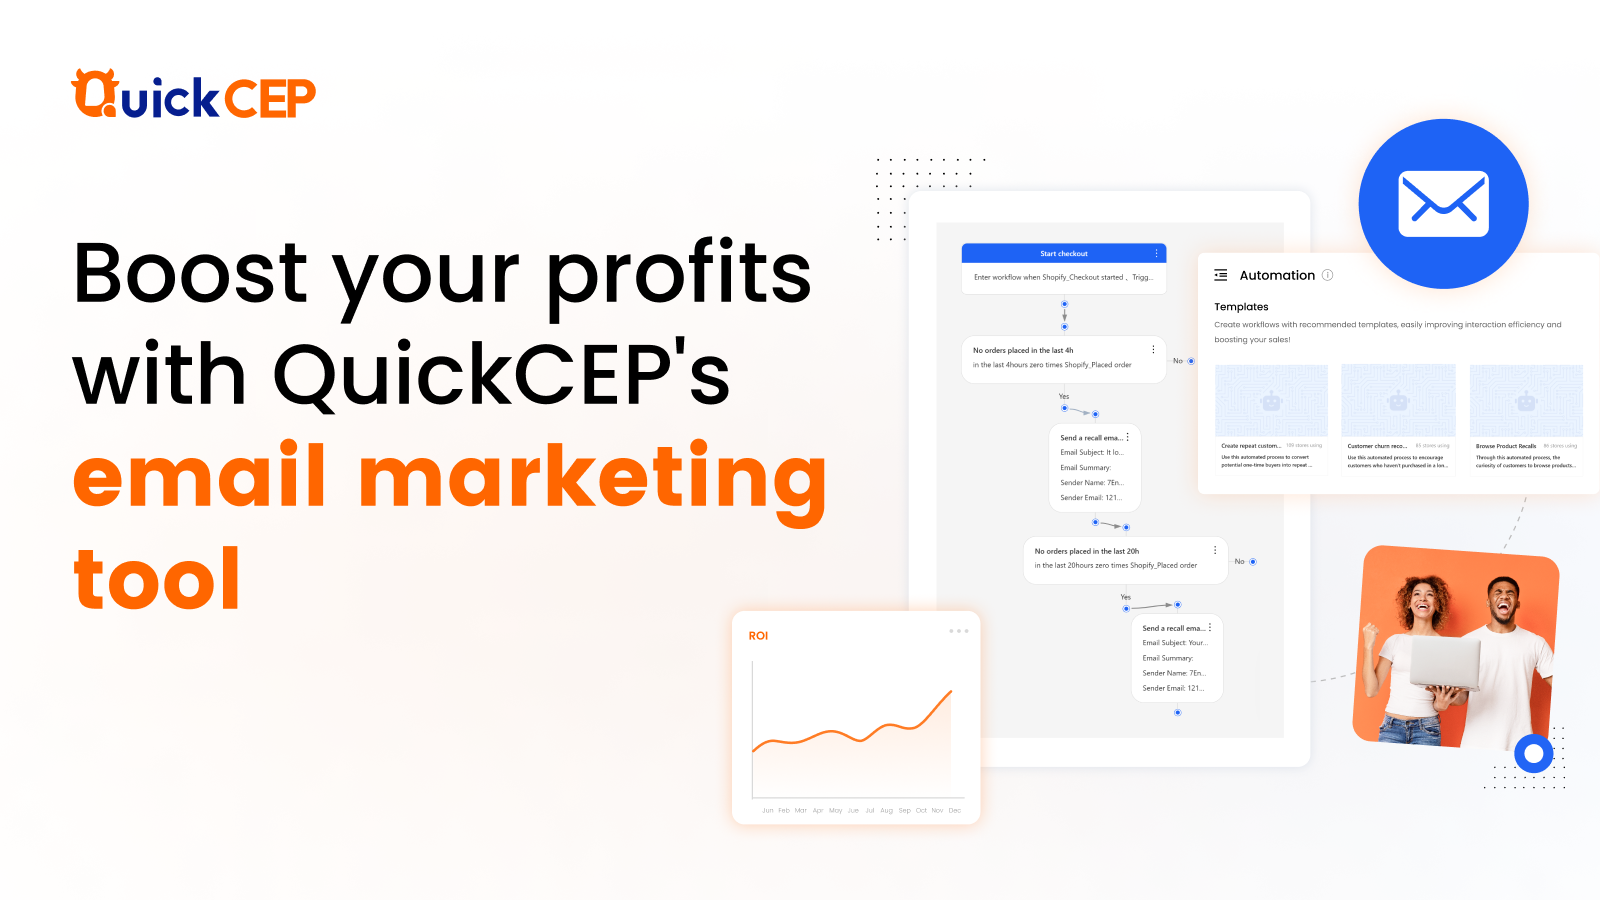 Impulsione suas vendas com as ferramentas de marketing por e-mail do QuickCEP